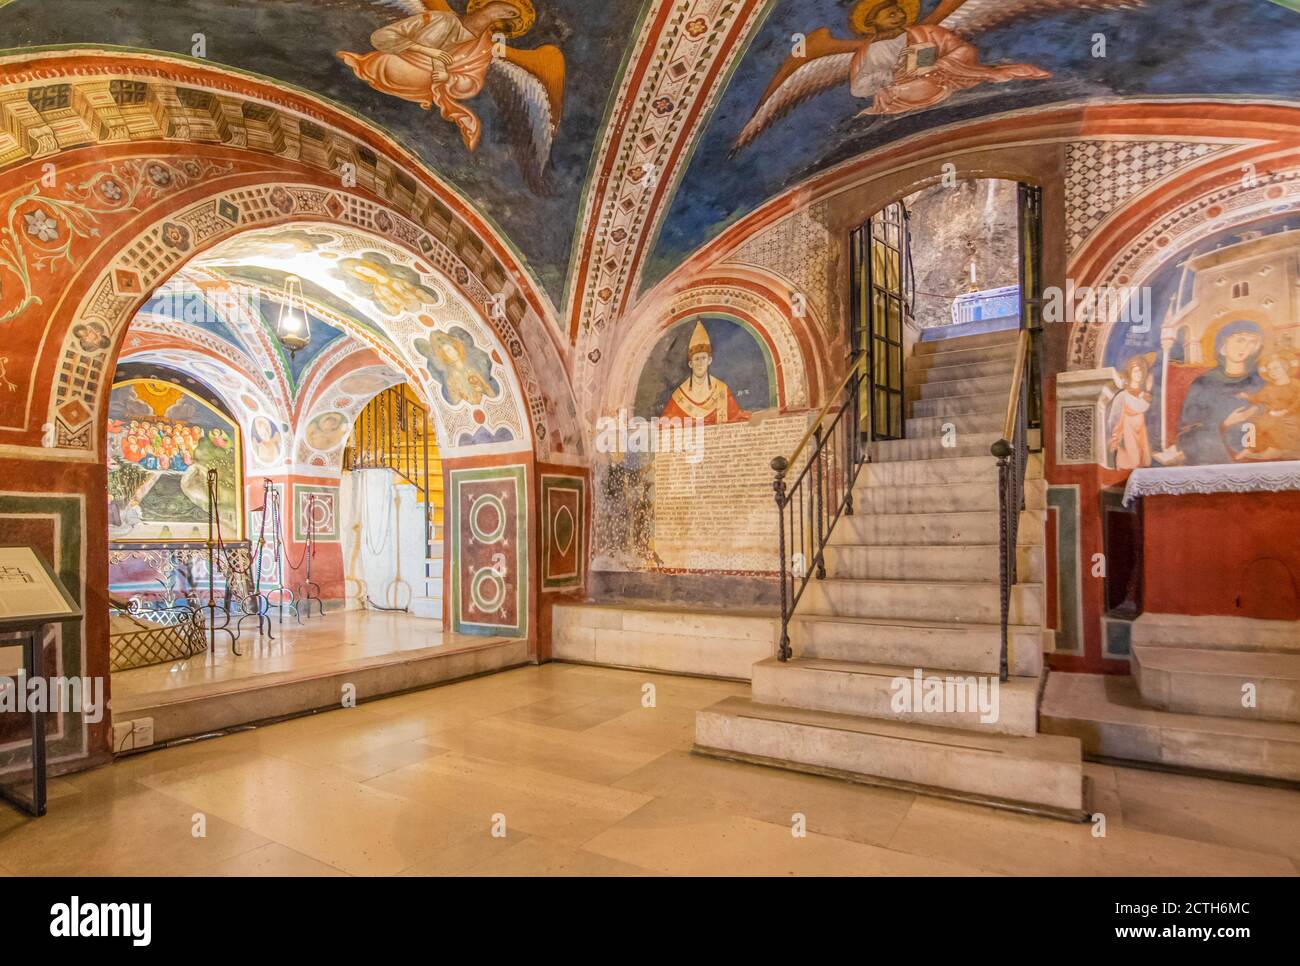 Hauptattrak von Subiaco und eines der schönsten Benediktinerkloster der Welt, das Sacro Speco Kloster zeigt erstaunliche Fresken Stockfoto